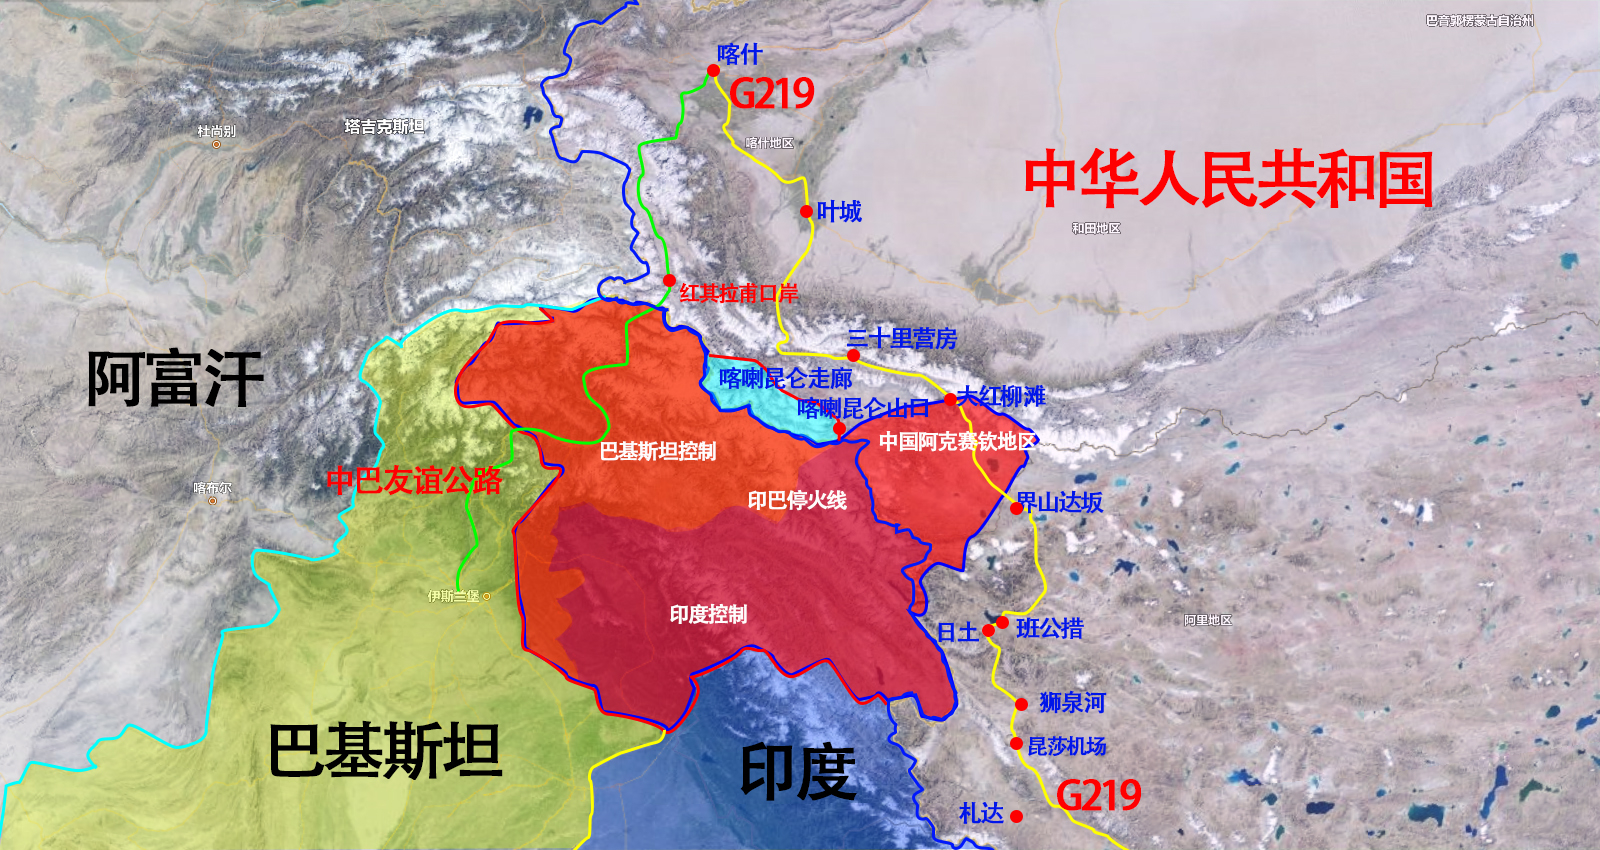 自驾新藏线和阿里北线你所想要的知道的克什米尔阿克塞钦地区